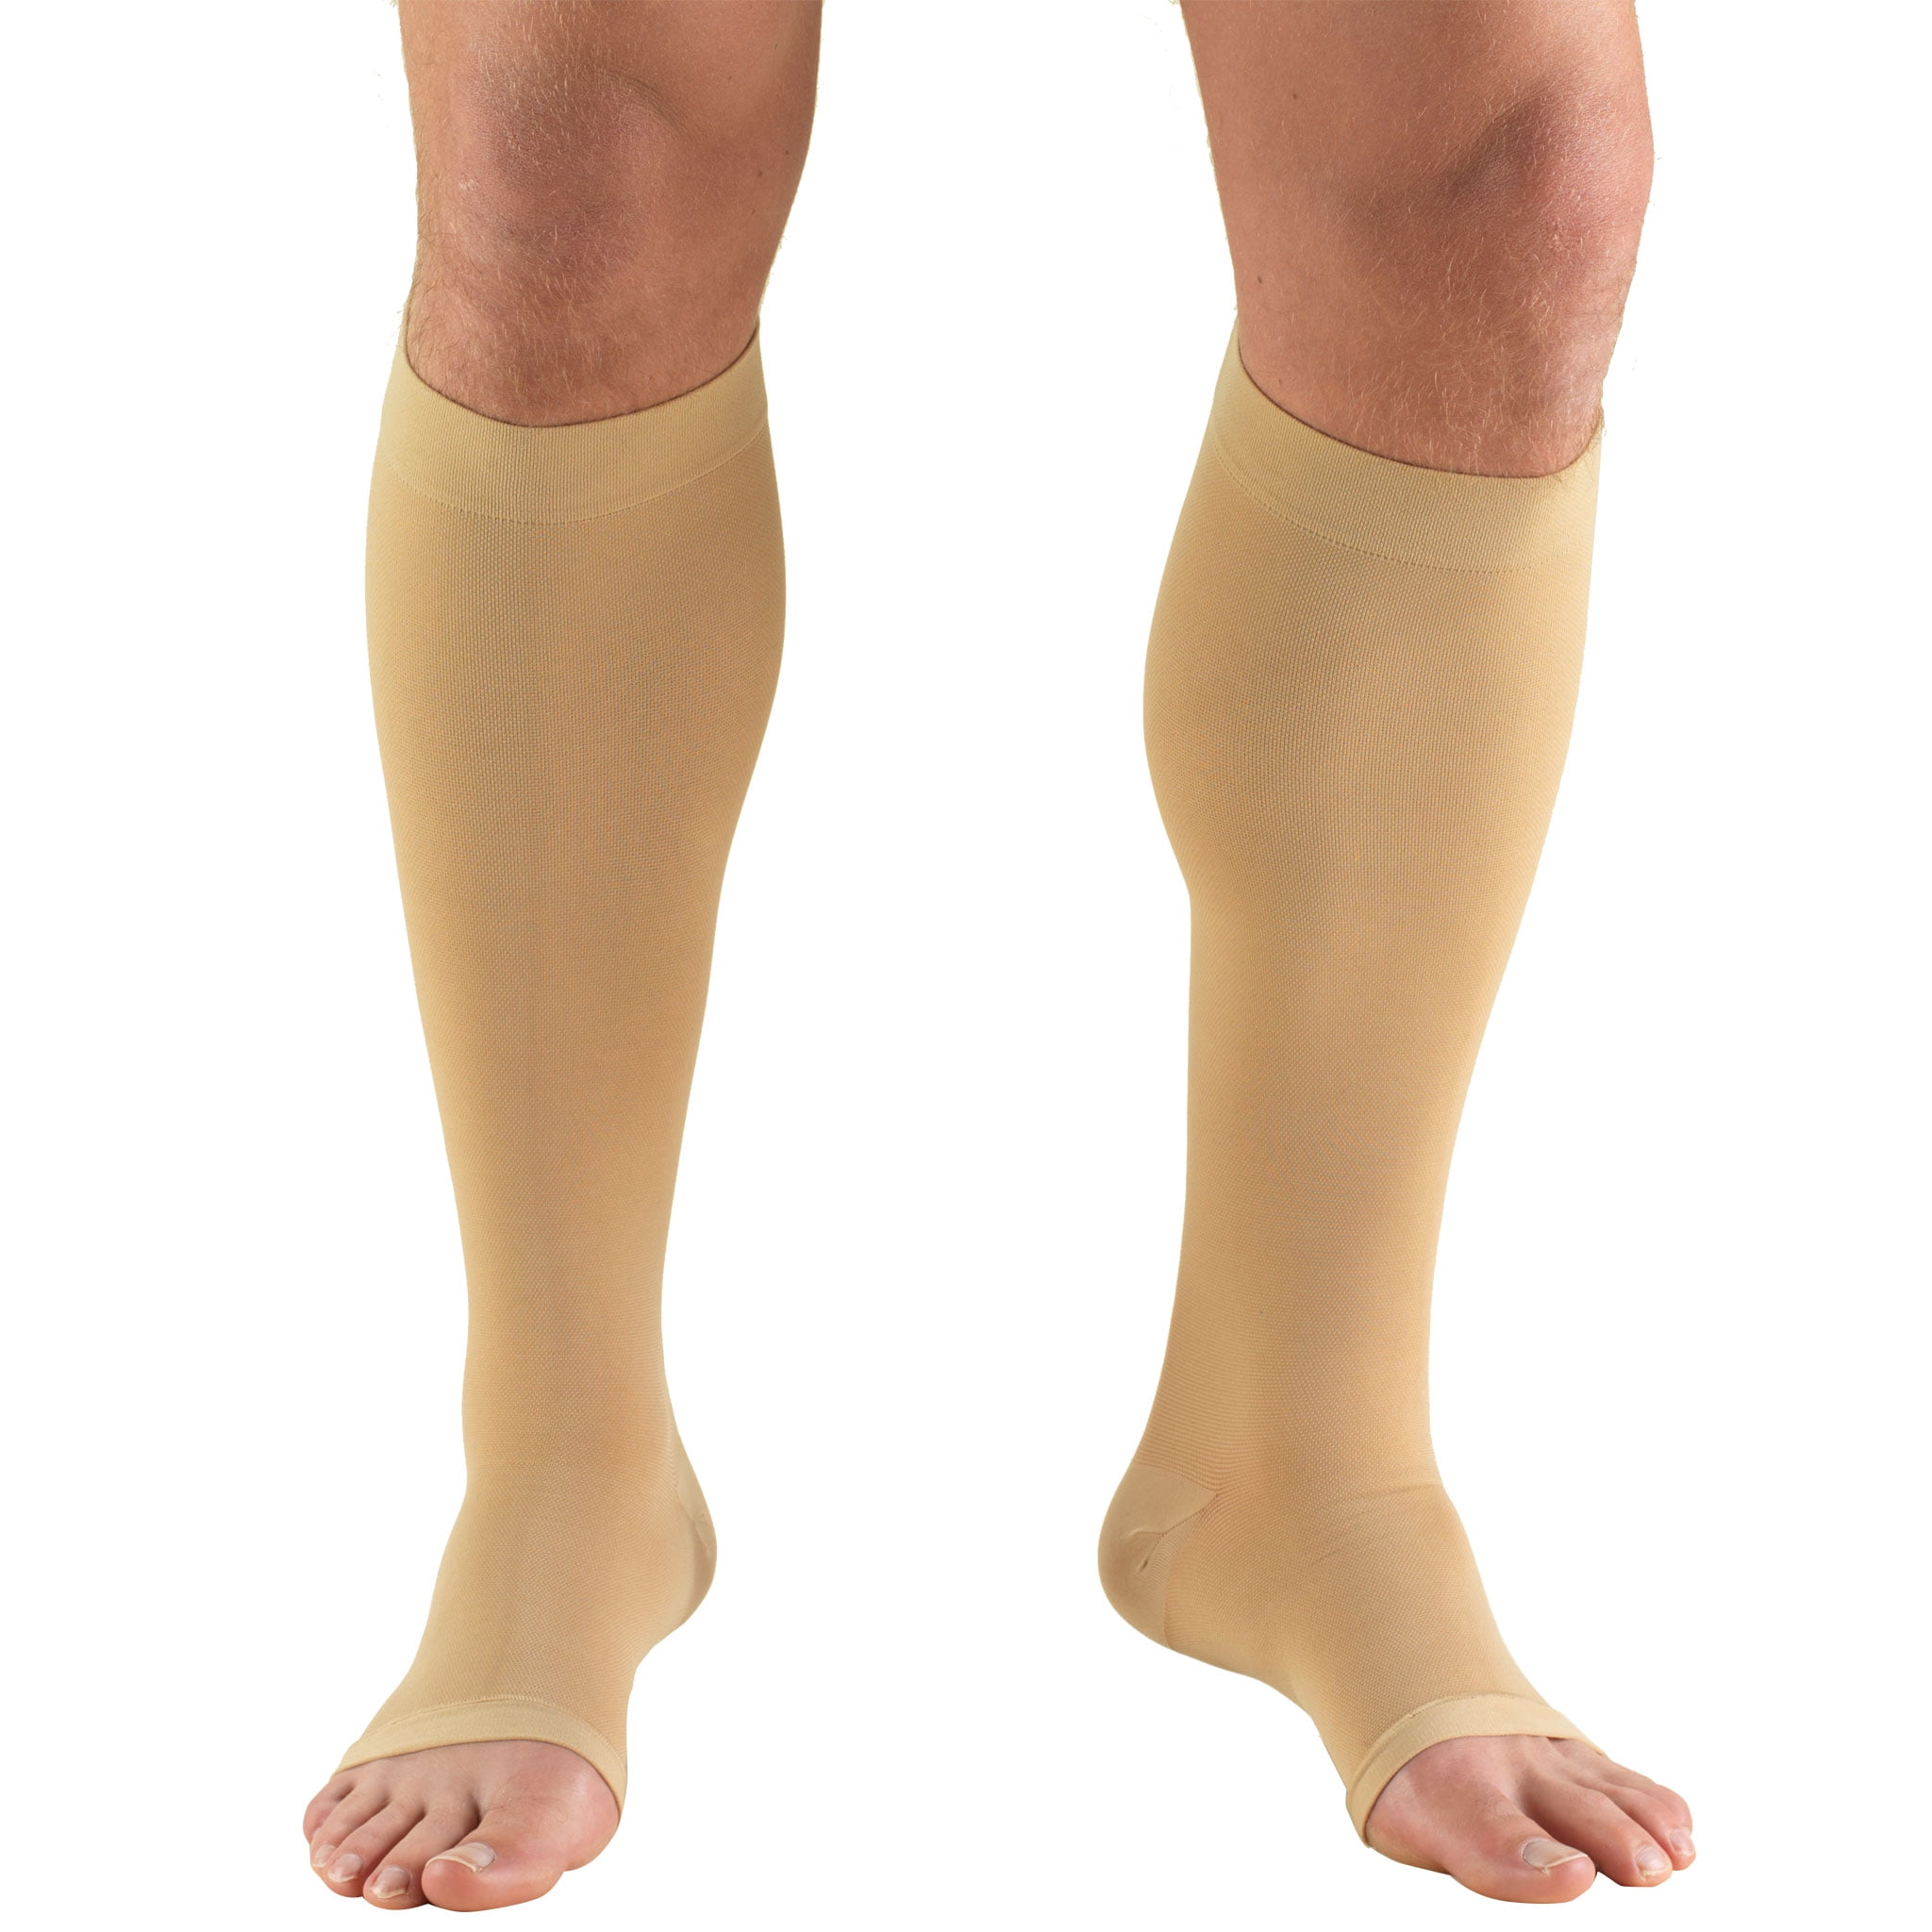 Relaxsan Basic 850-140 denier moderate support knee high socks 18-22 mmHg